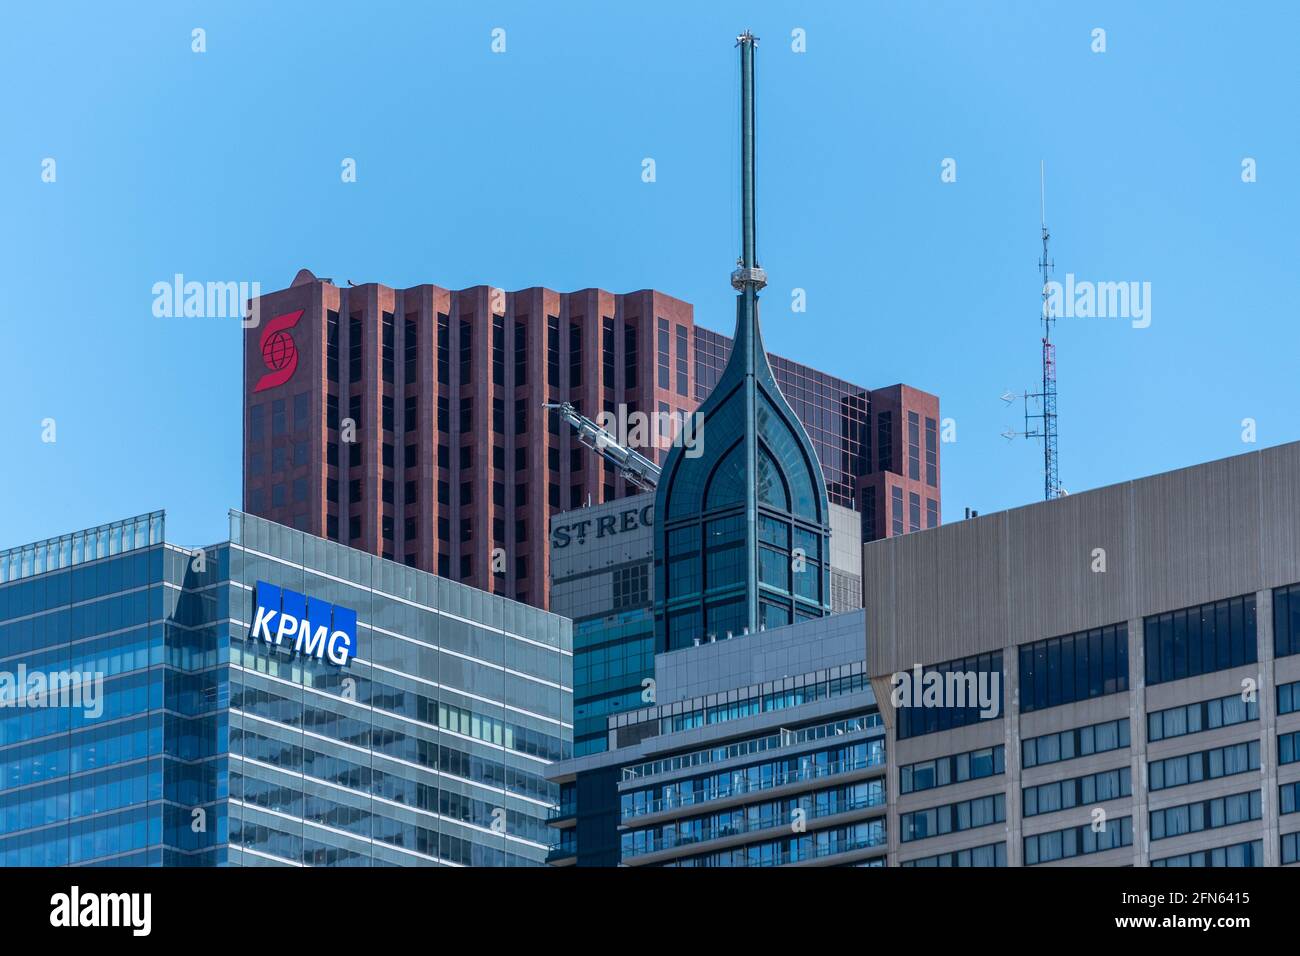 Zoomez sur les gratte-ciel du quartier du centre-ville de Toronto, Canada. Les logos de KPMG et de la Banque Scotia sont visibles au-dessus des bâtiments Banque D'Images